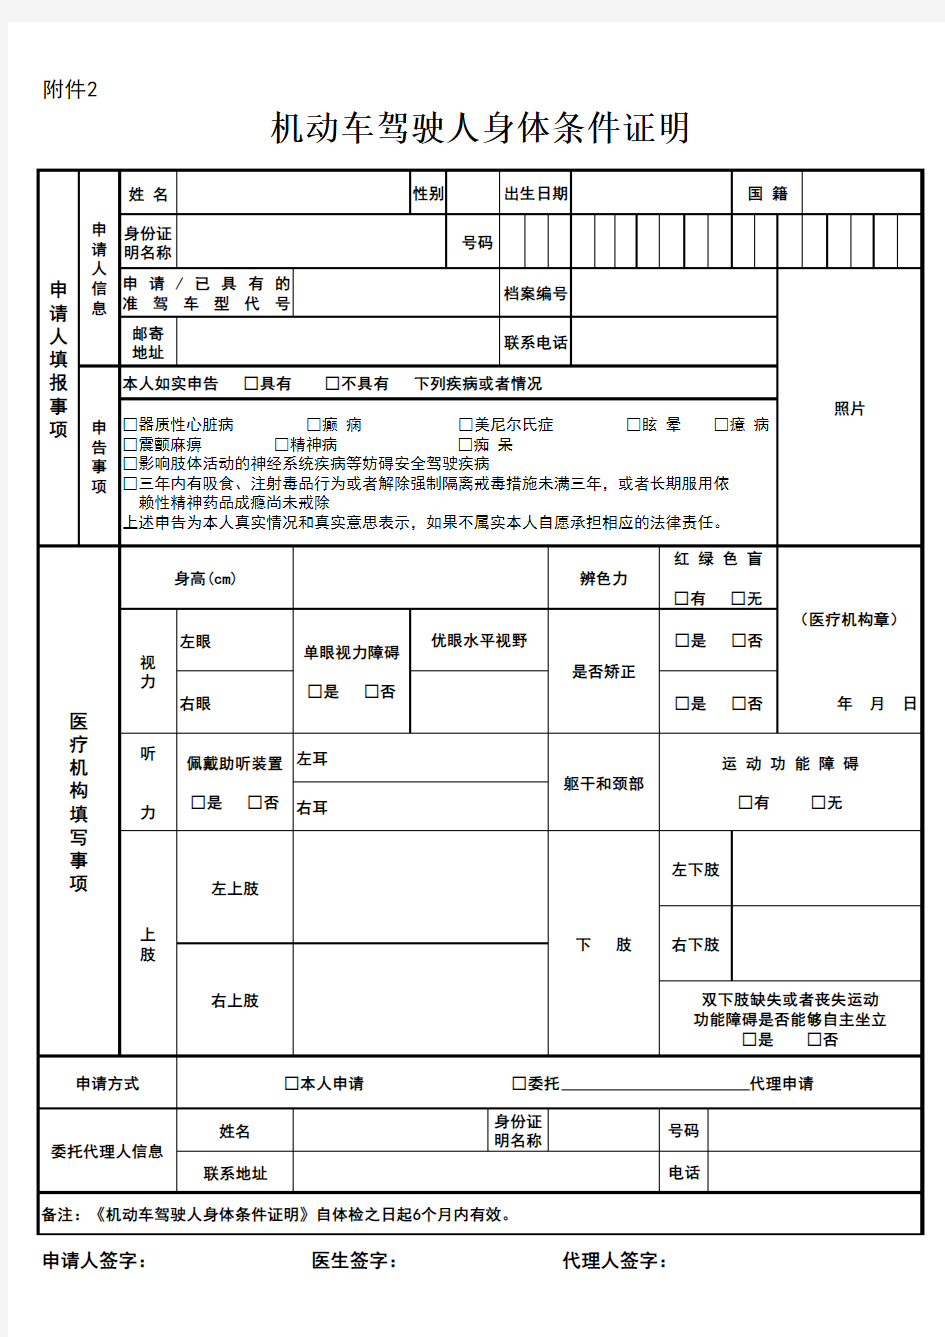 2017济南机动车驾驶人身体条件证明-2换证体检表